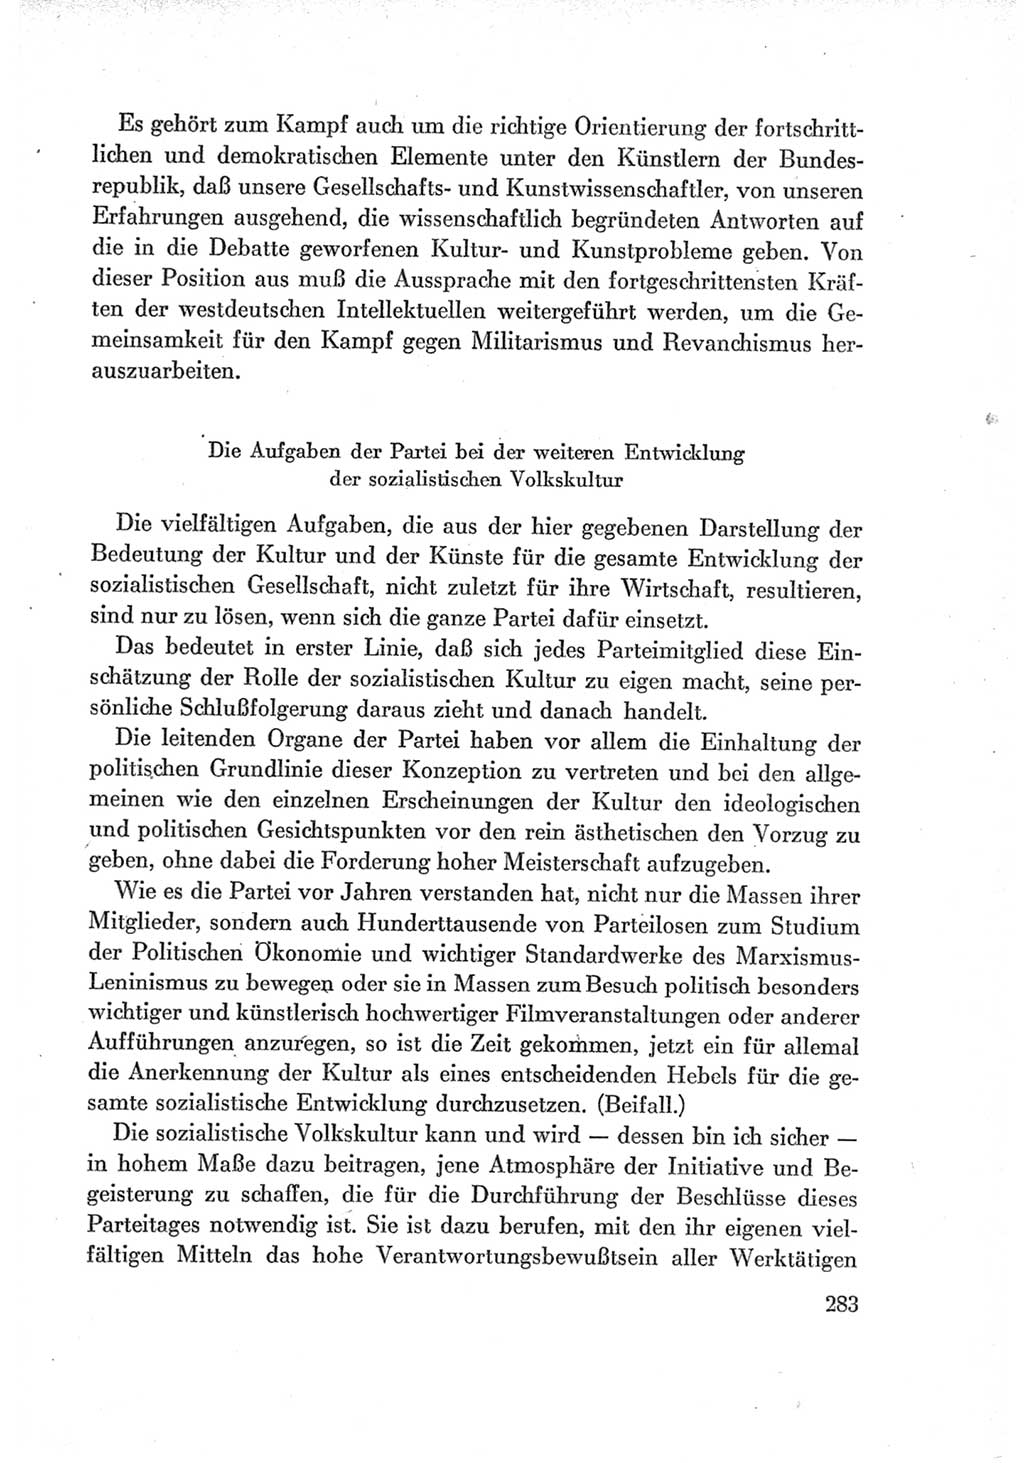 Protokoll der Verhandlungen des Ⅶ. Parteitages der Sozialistischen Einheitspartei Deutschlands (SED) [Deutsche Demokratische Republik (DDR)] 1967, Band Ⅰ, Seite 283 (Prot. Verh. Ⅶ. PT SED DDR 1967, Bd. Ⅰ, S. 283)